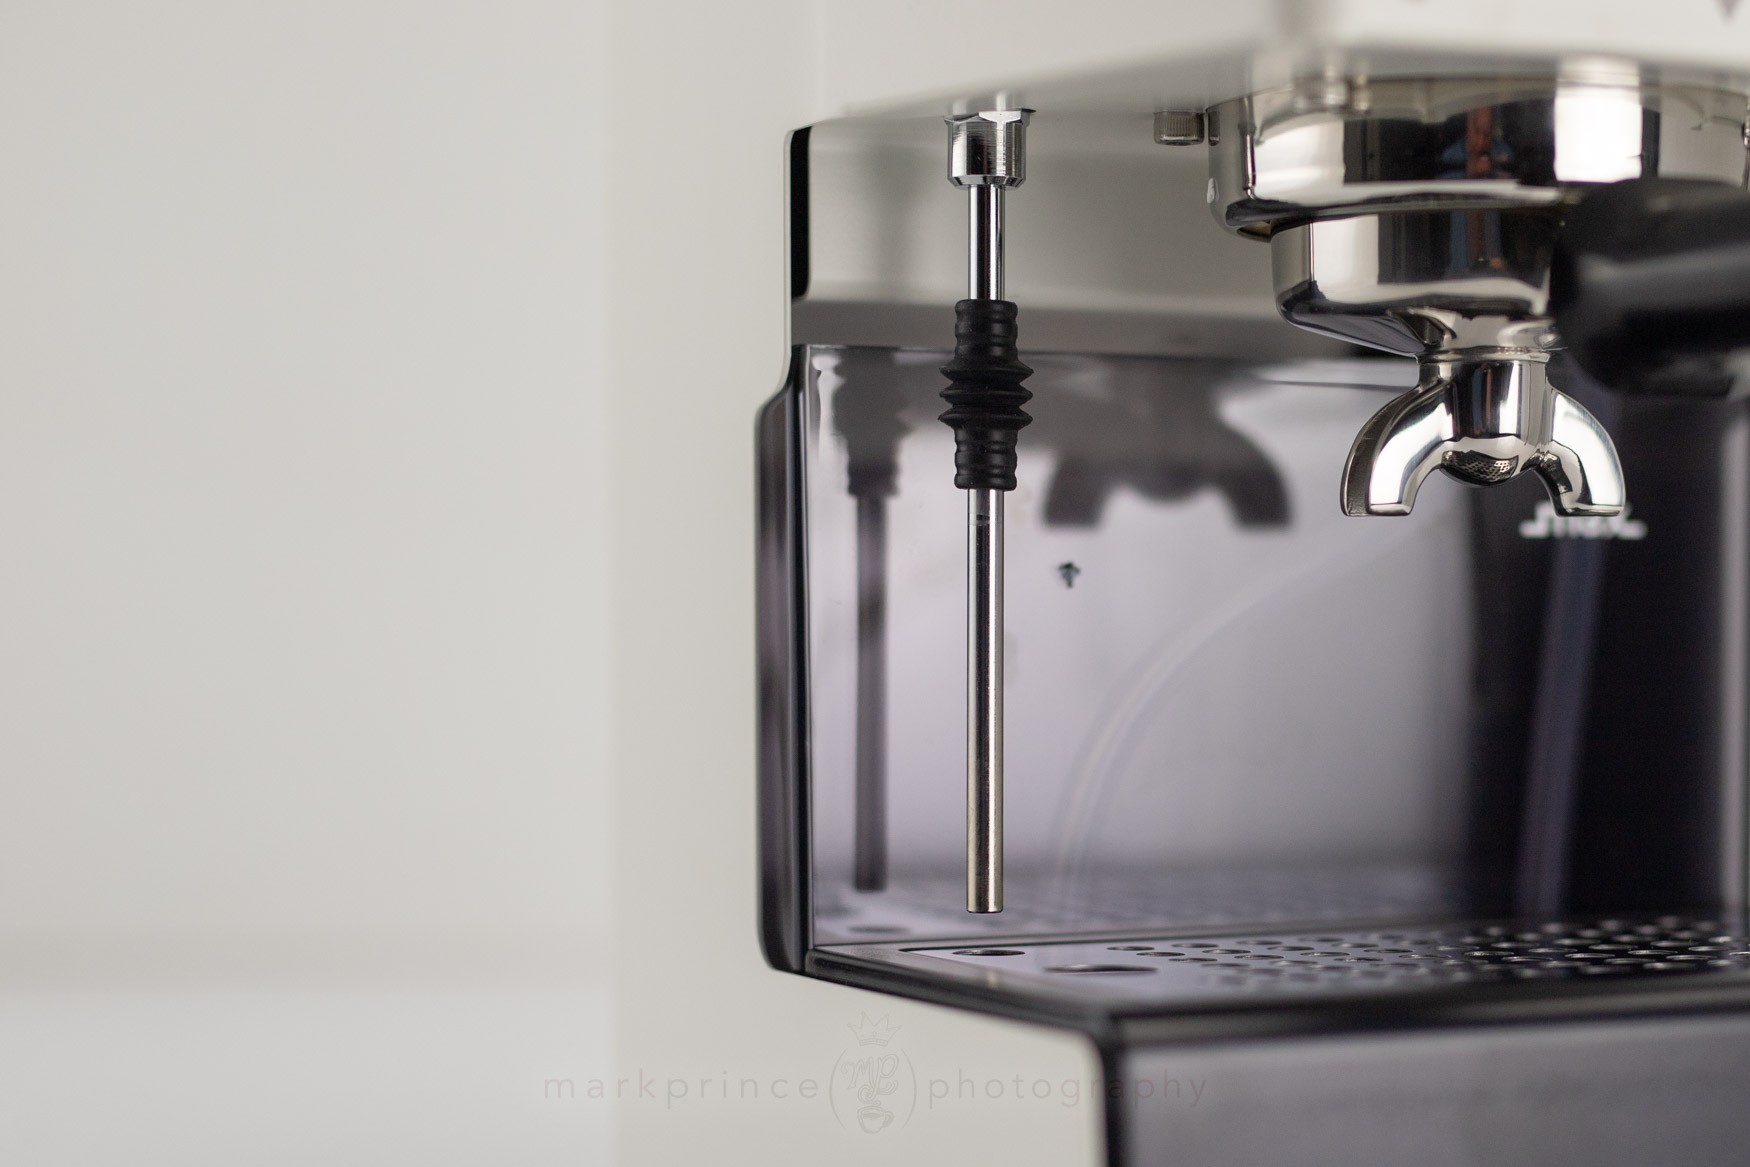 New Gaggia Classic - Semi automatic espresso machine for home